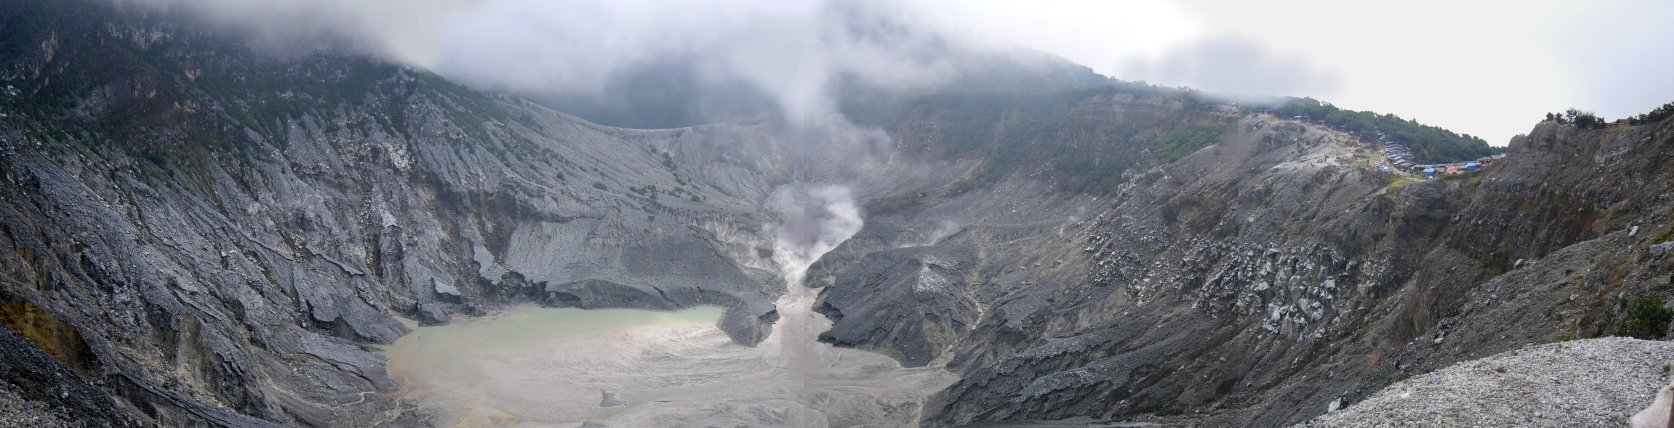 タンクバンプラウ火山の火口